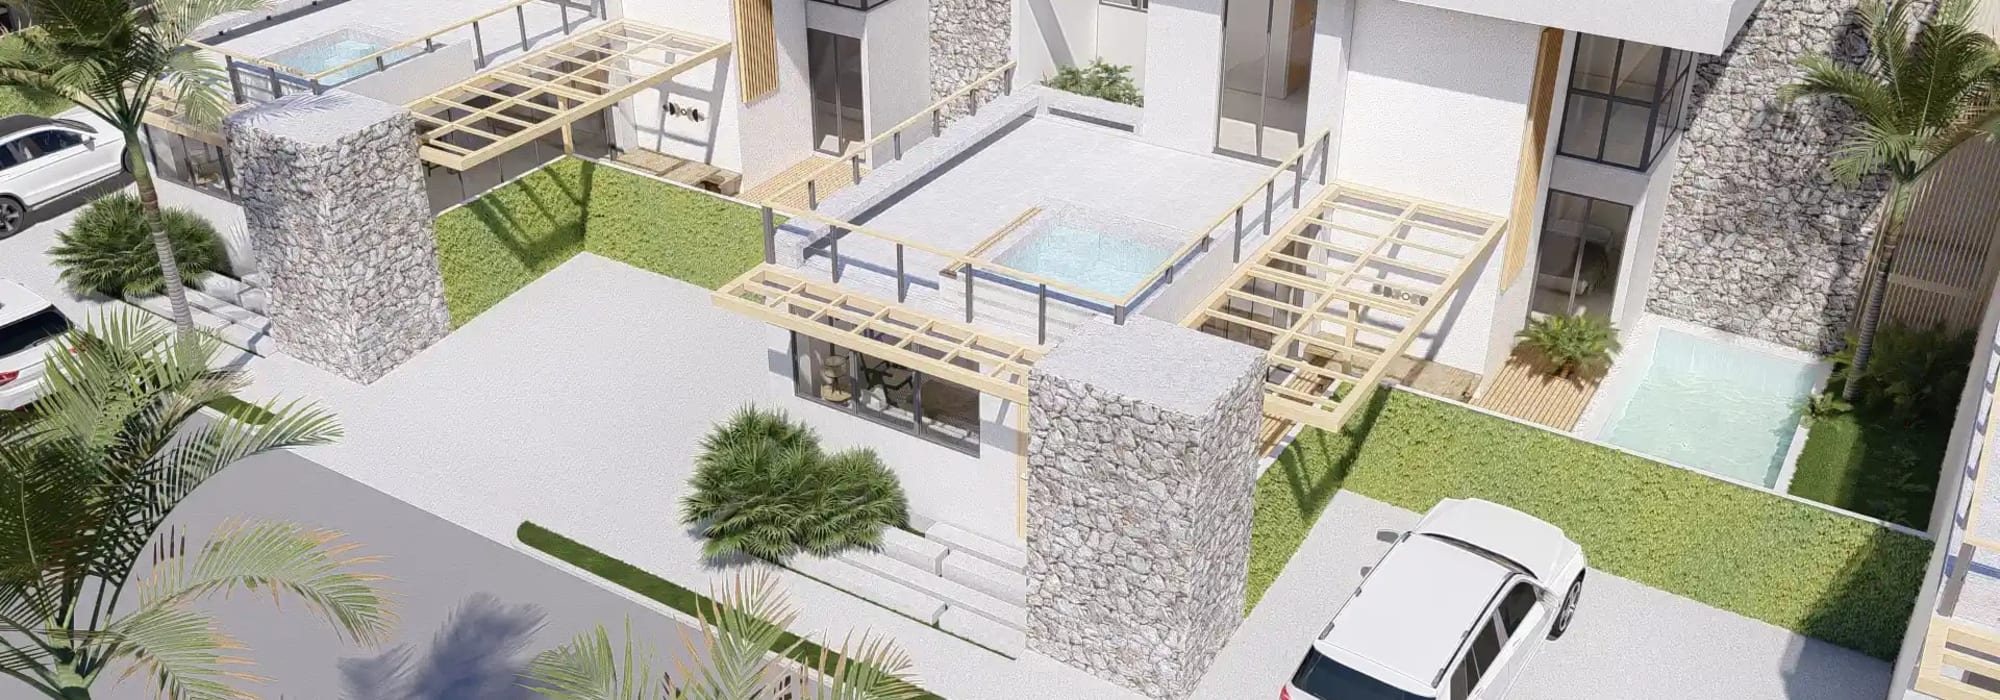 Iguana Residences - Compra casa nueva en Costa del Sol